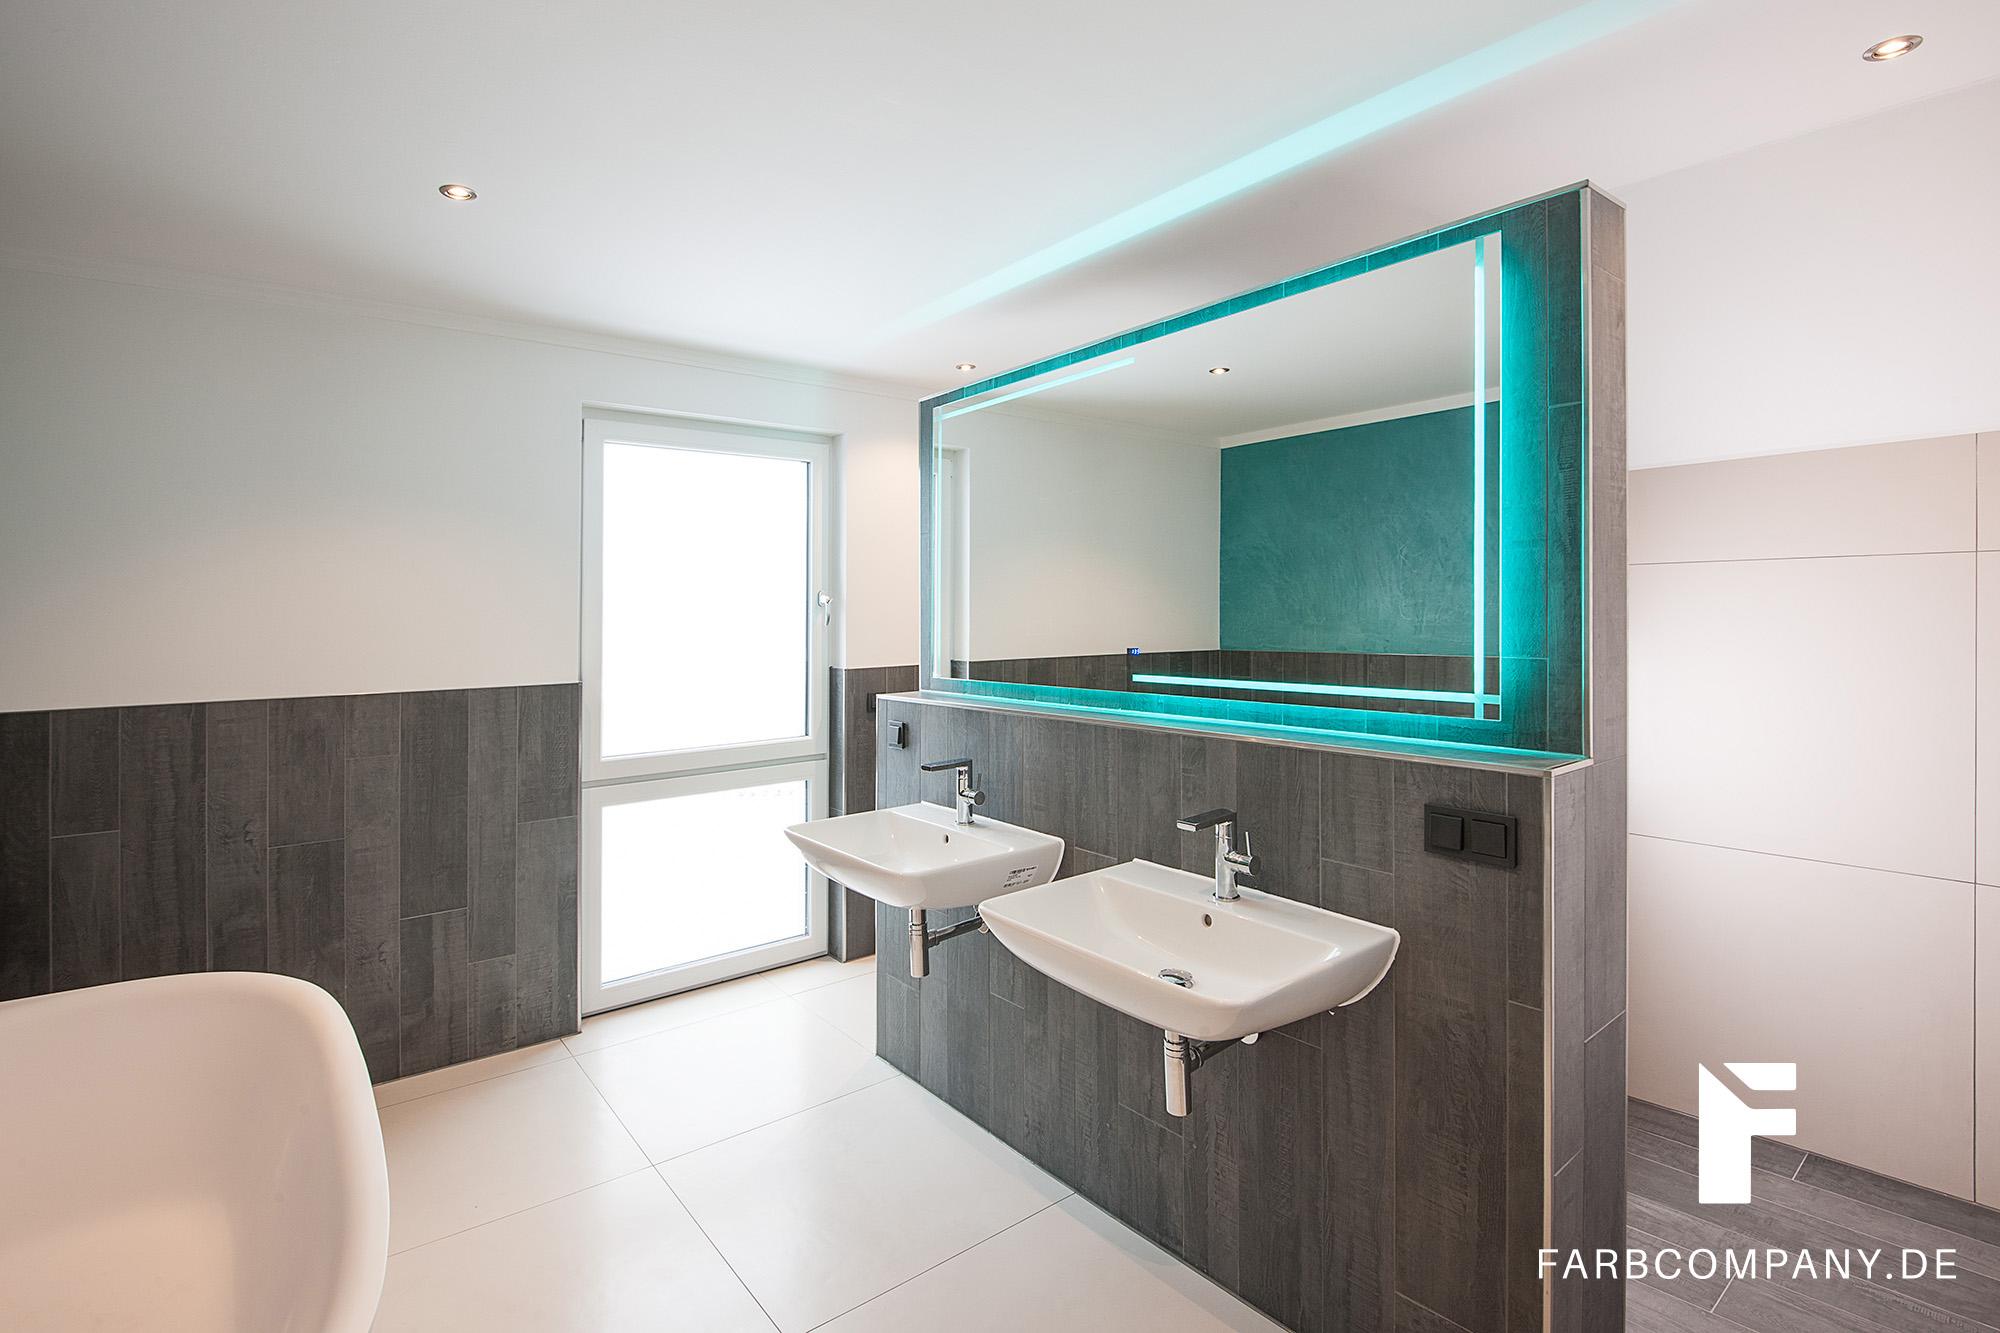 Raumgestaltung/ Badezimmer Wandgestaltung mit Steinspachtel, fugenlos #fugenlosesbad #spachteltechnik ©Farbcompany/ Mike Schleupner